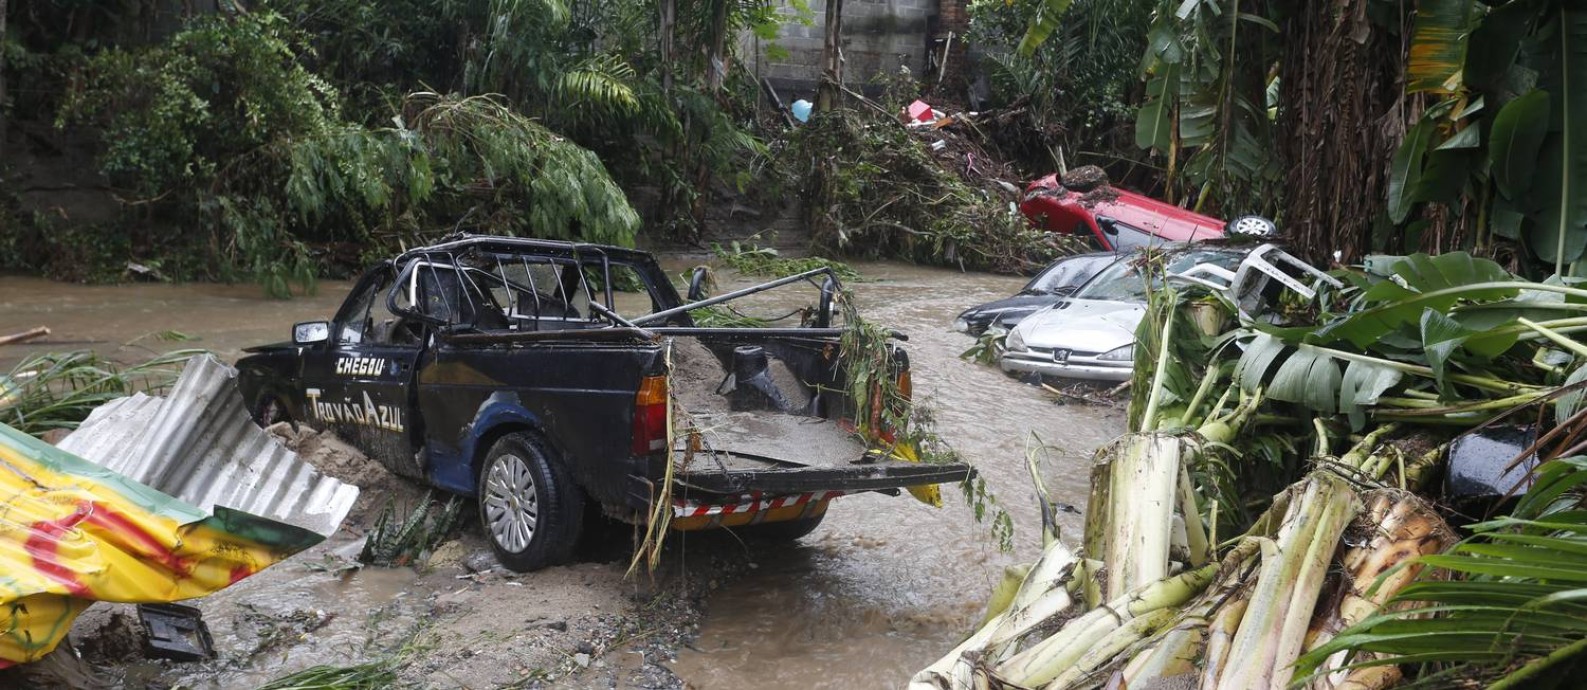 Carros que estavam na Rua São Francisco, em Realengo, são arrastados para um rio durante o temporal Foto: Fabiano Rocha / Agência O Globo